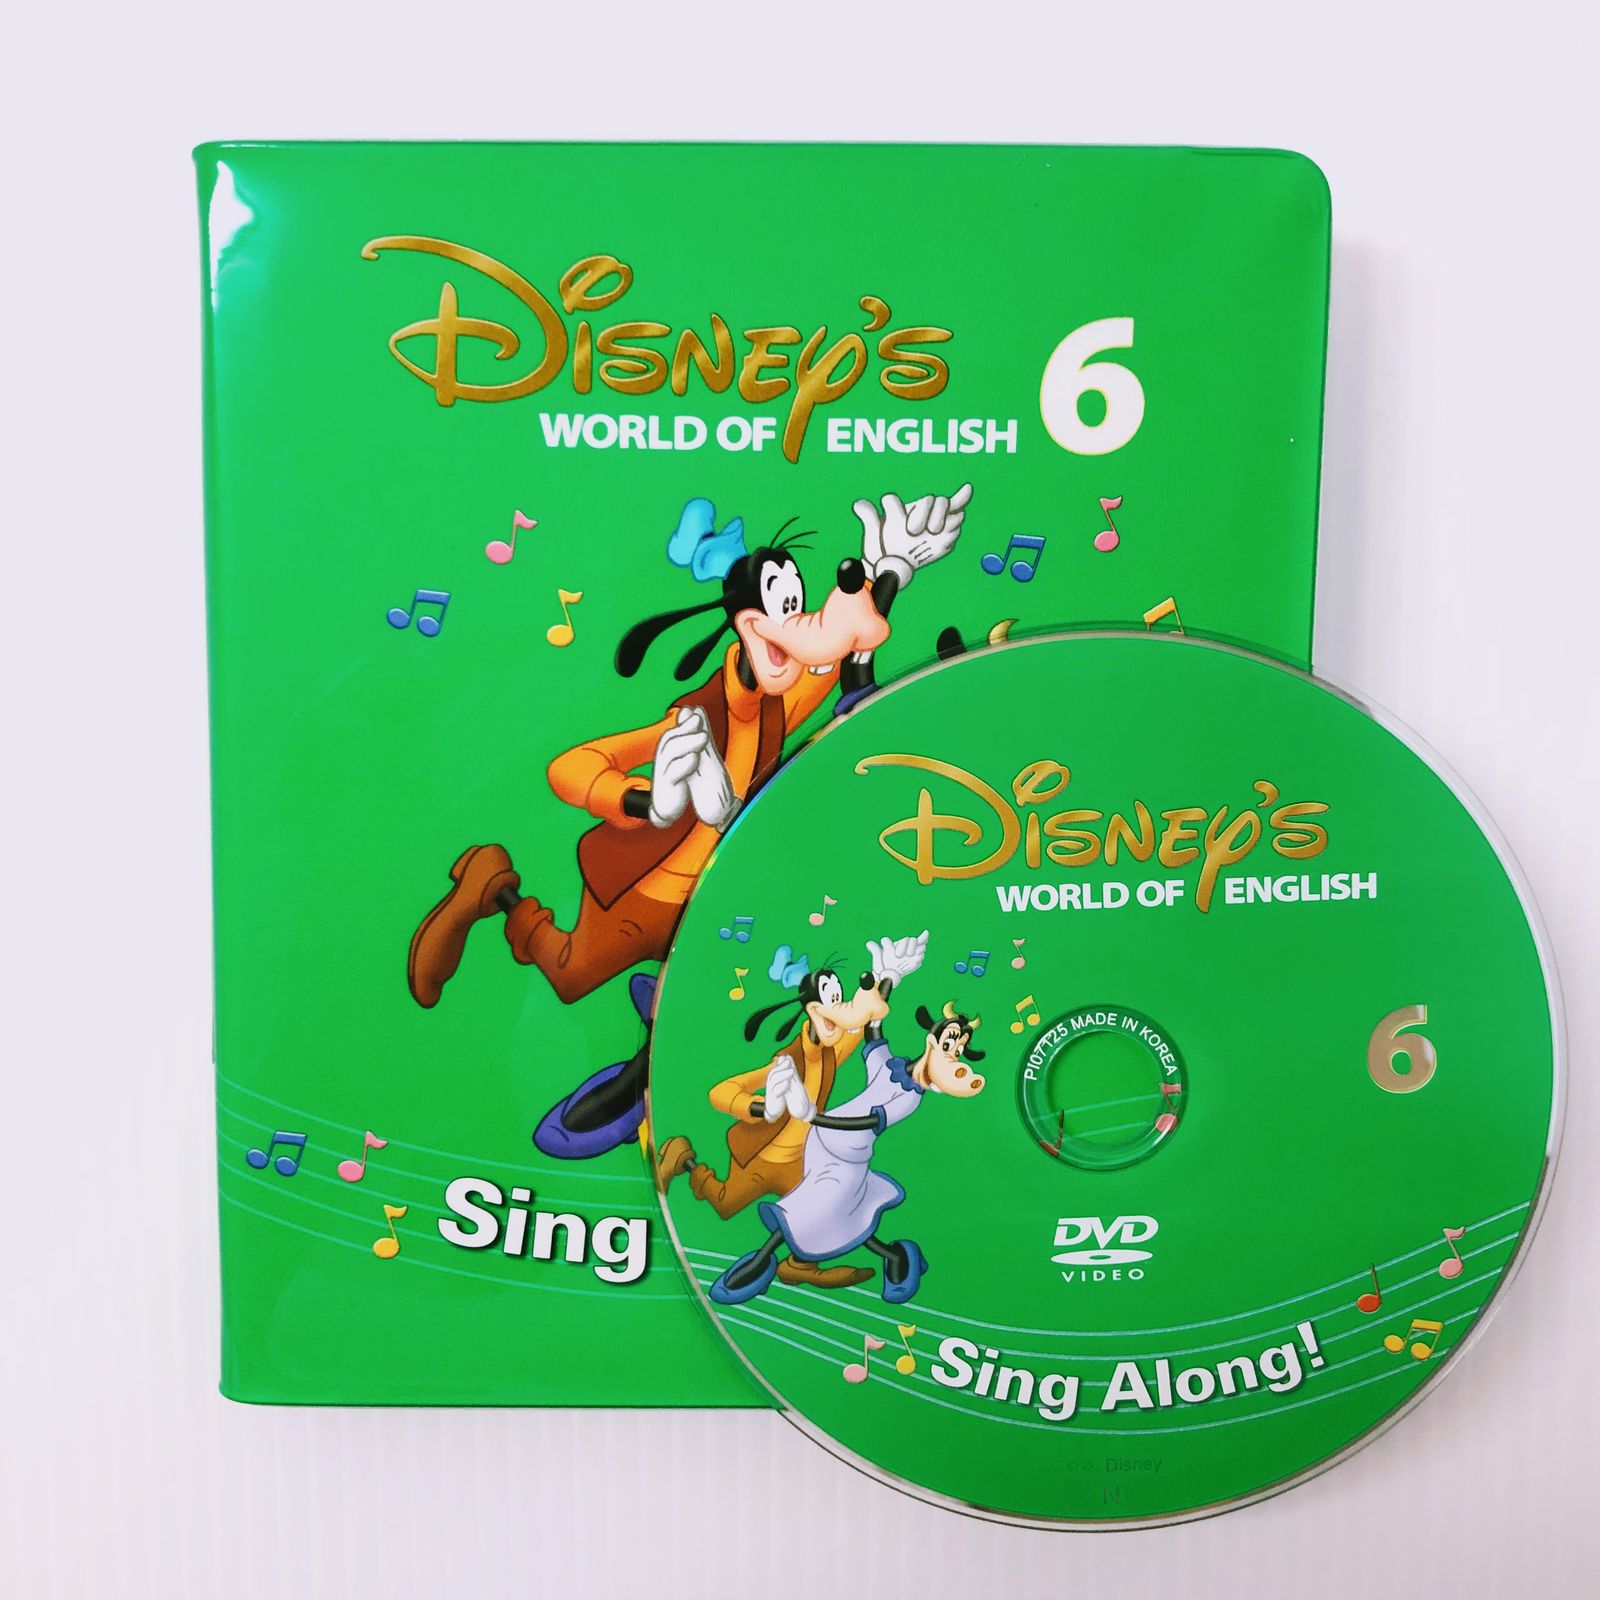 ディズニー英語システム シングアロング DVD 新子役 6巻 b-505 DWE